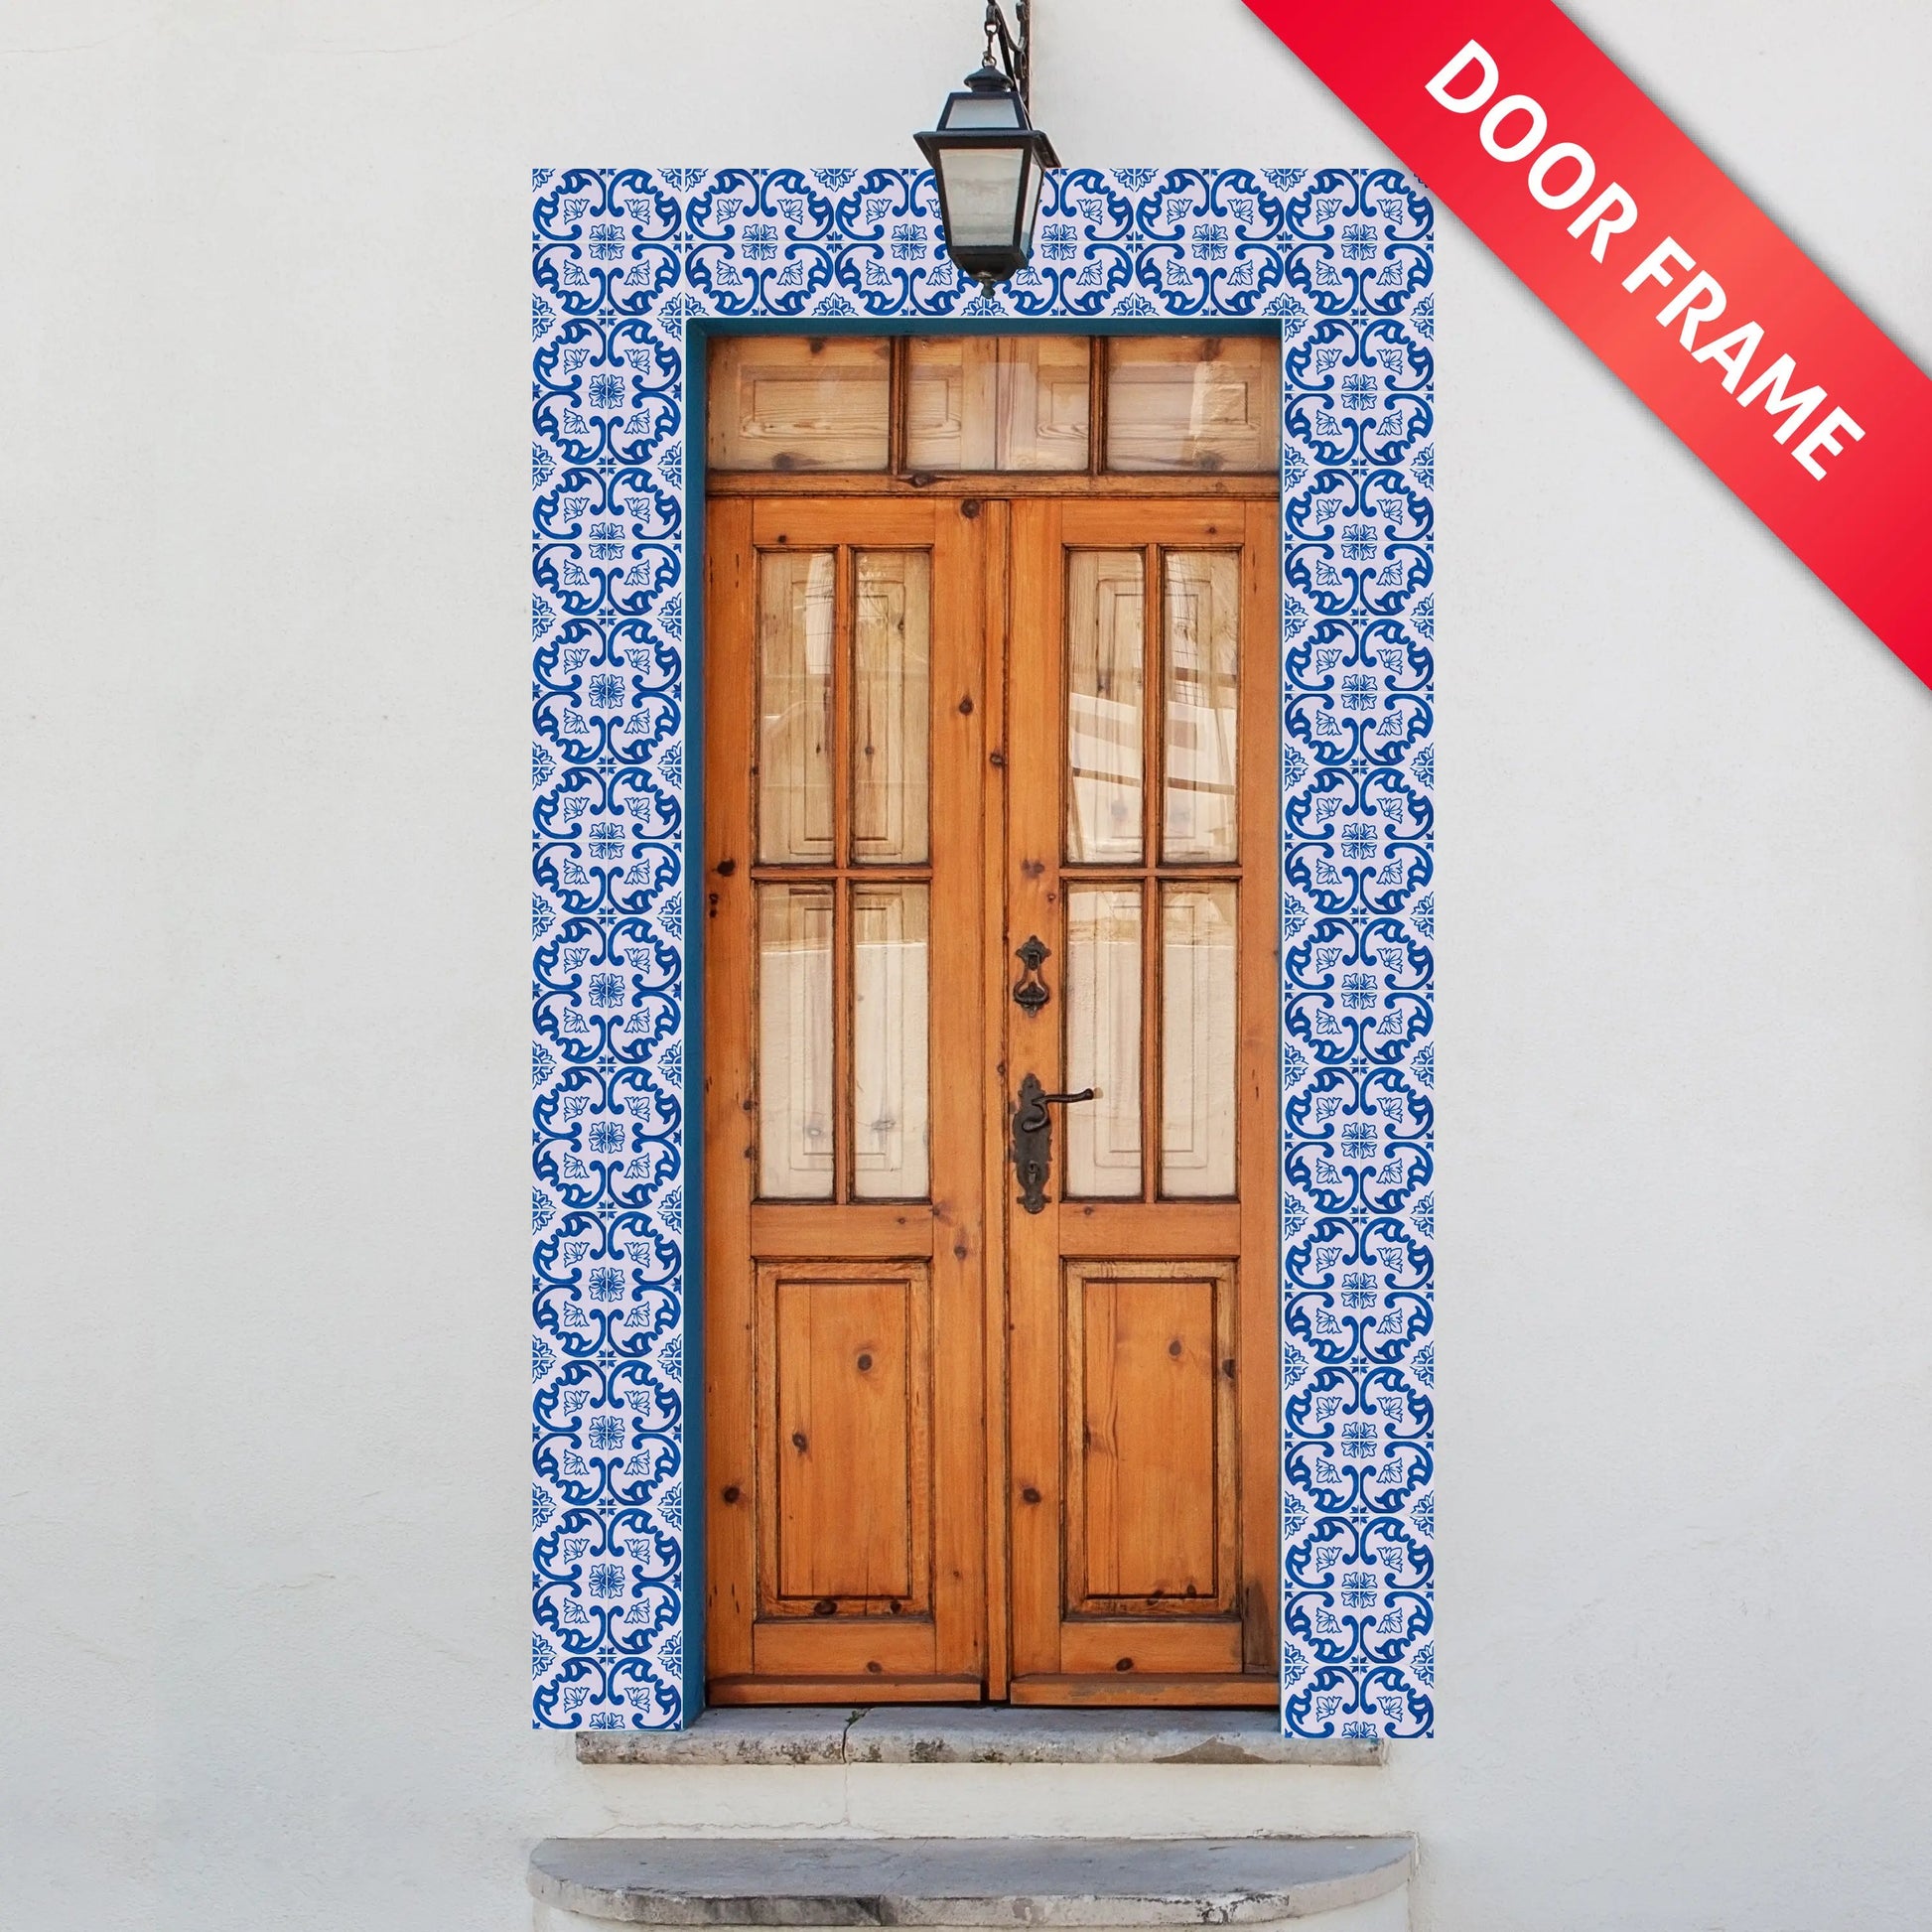 Portuguese Inspired Azulejos Nova Casa Pink Ceramic Tile Door Frame-Rooster Camisa